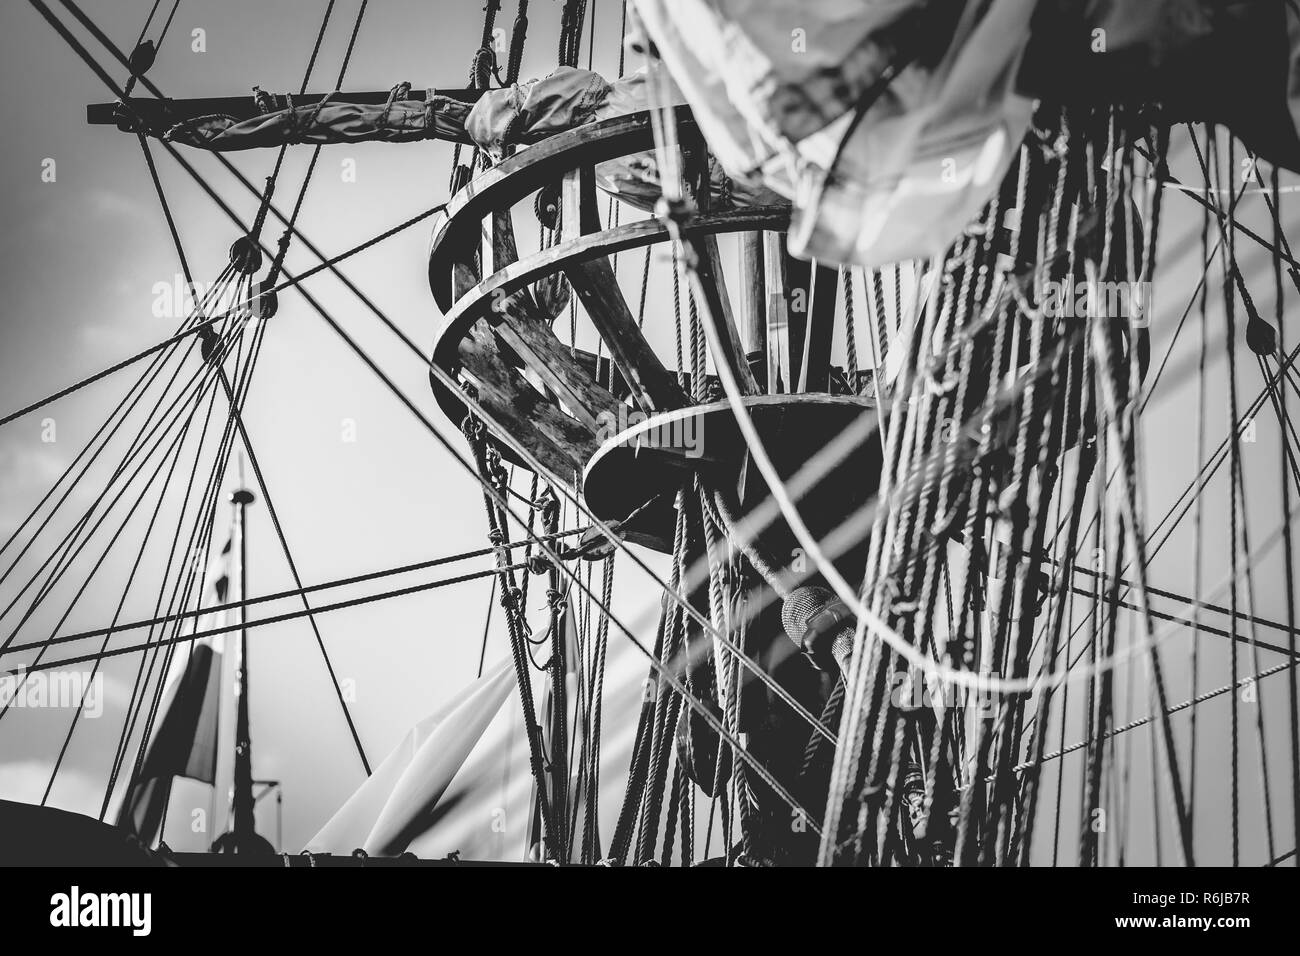 Detail der Mast des Schiffes. Detaillierte Takelage mit Segeln. Vintage Segelschiff Flaschenzug. handgefertigte Holzarbeiten Statuen und einem Wald auf Boot Masten Stockfoto